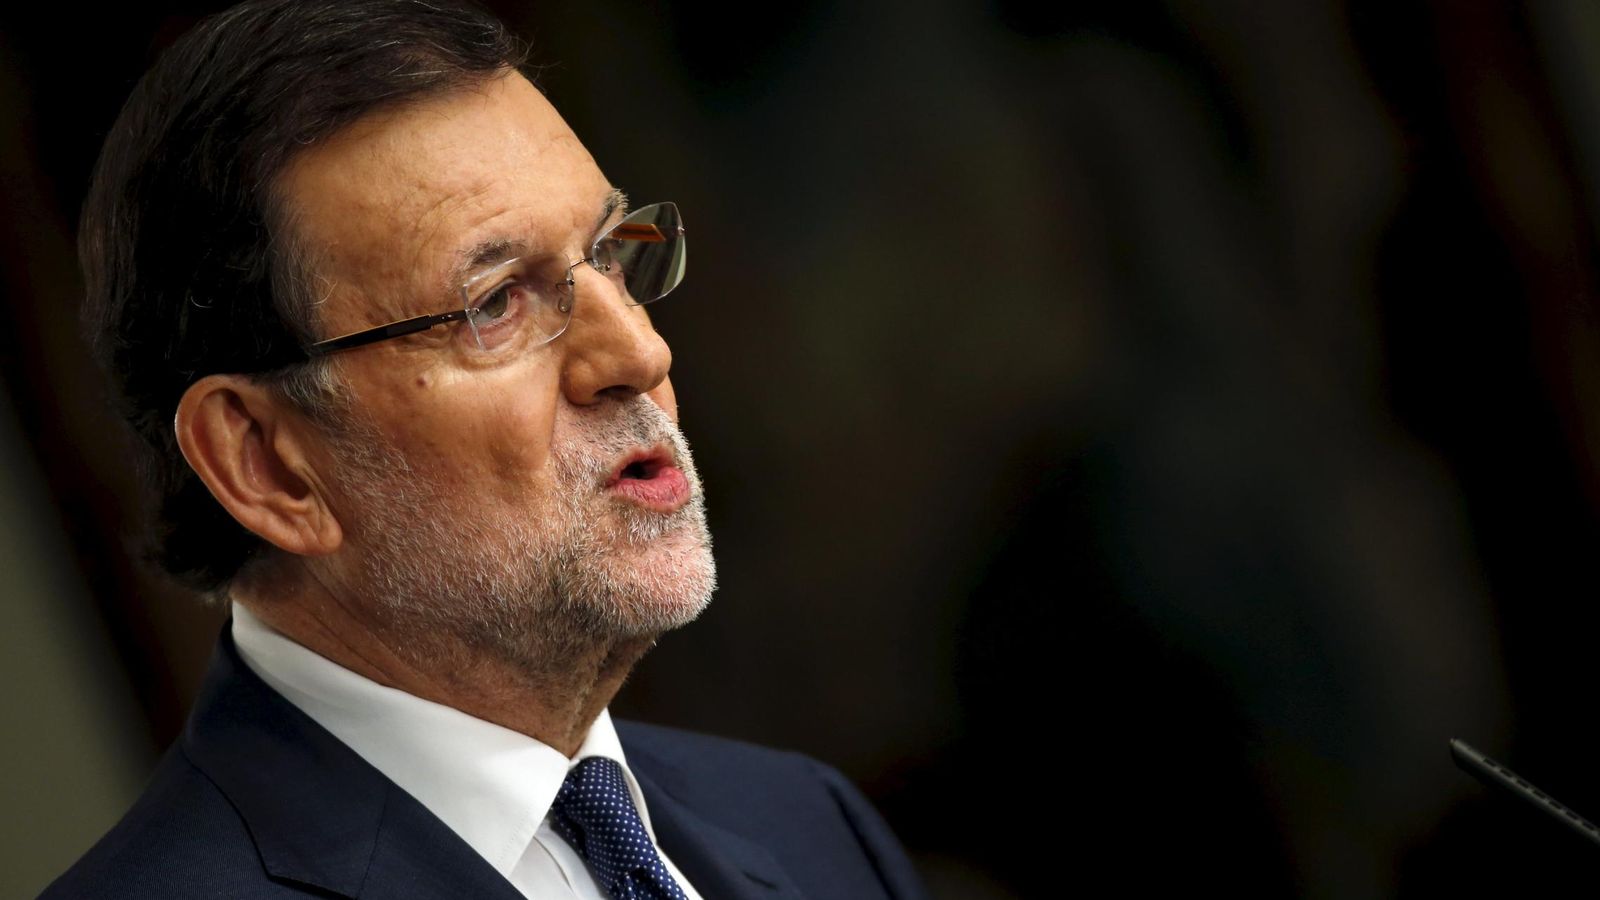 Foto: El presidente del Gobierno, Mariano Rajoy